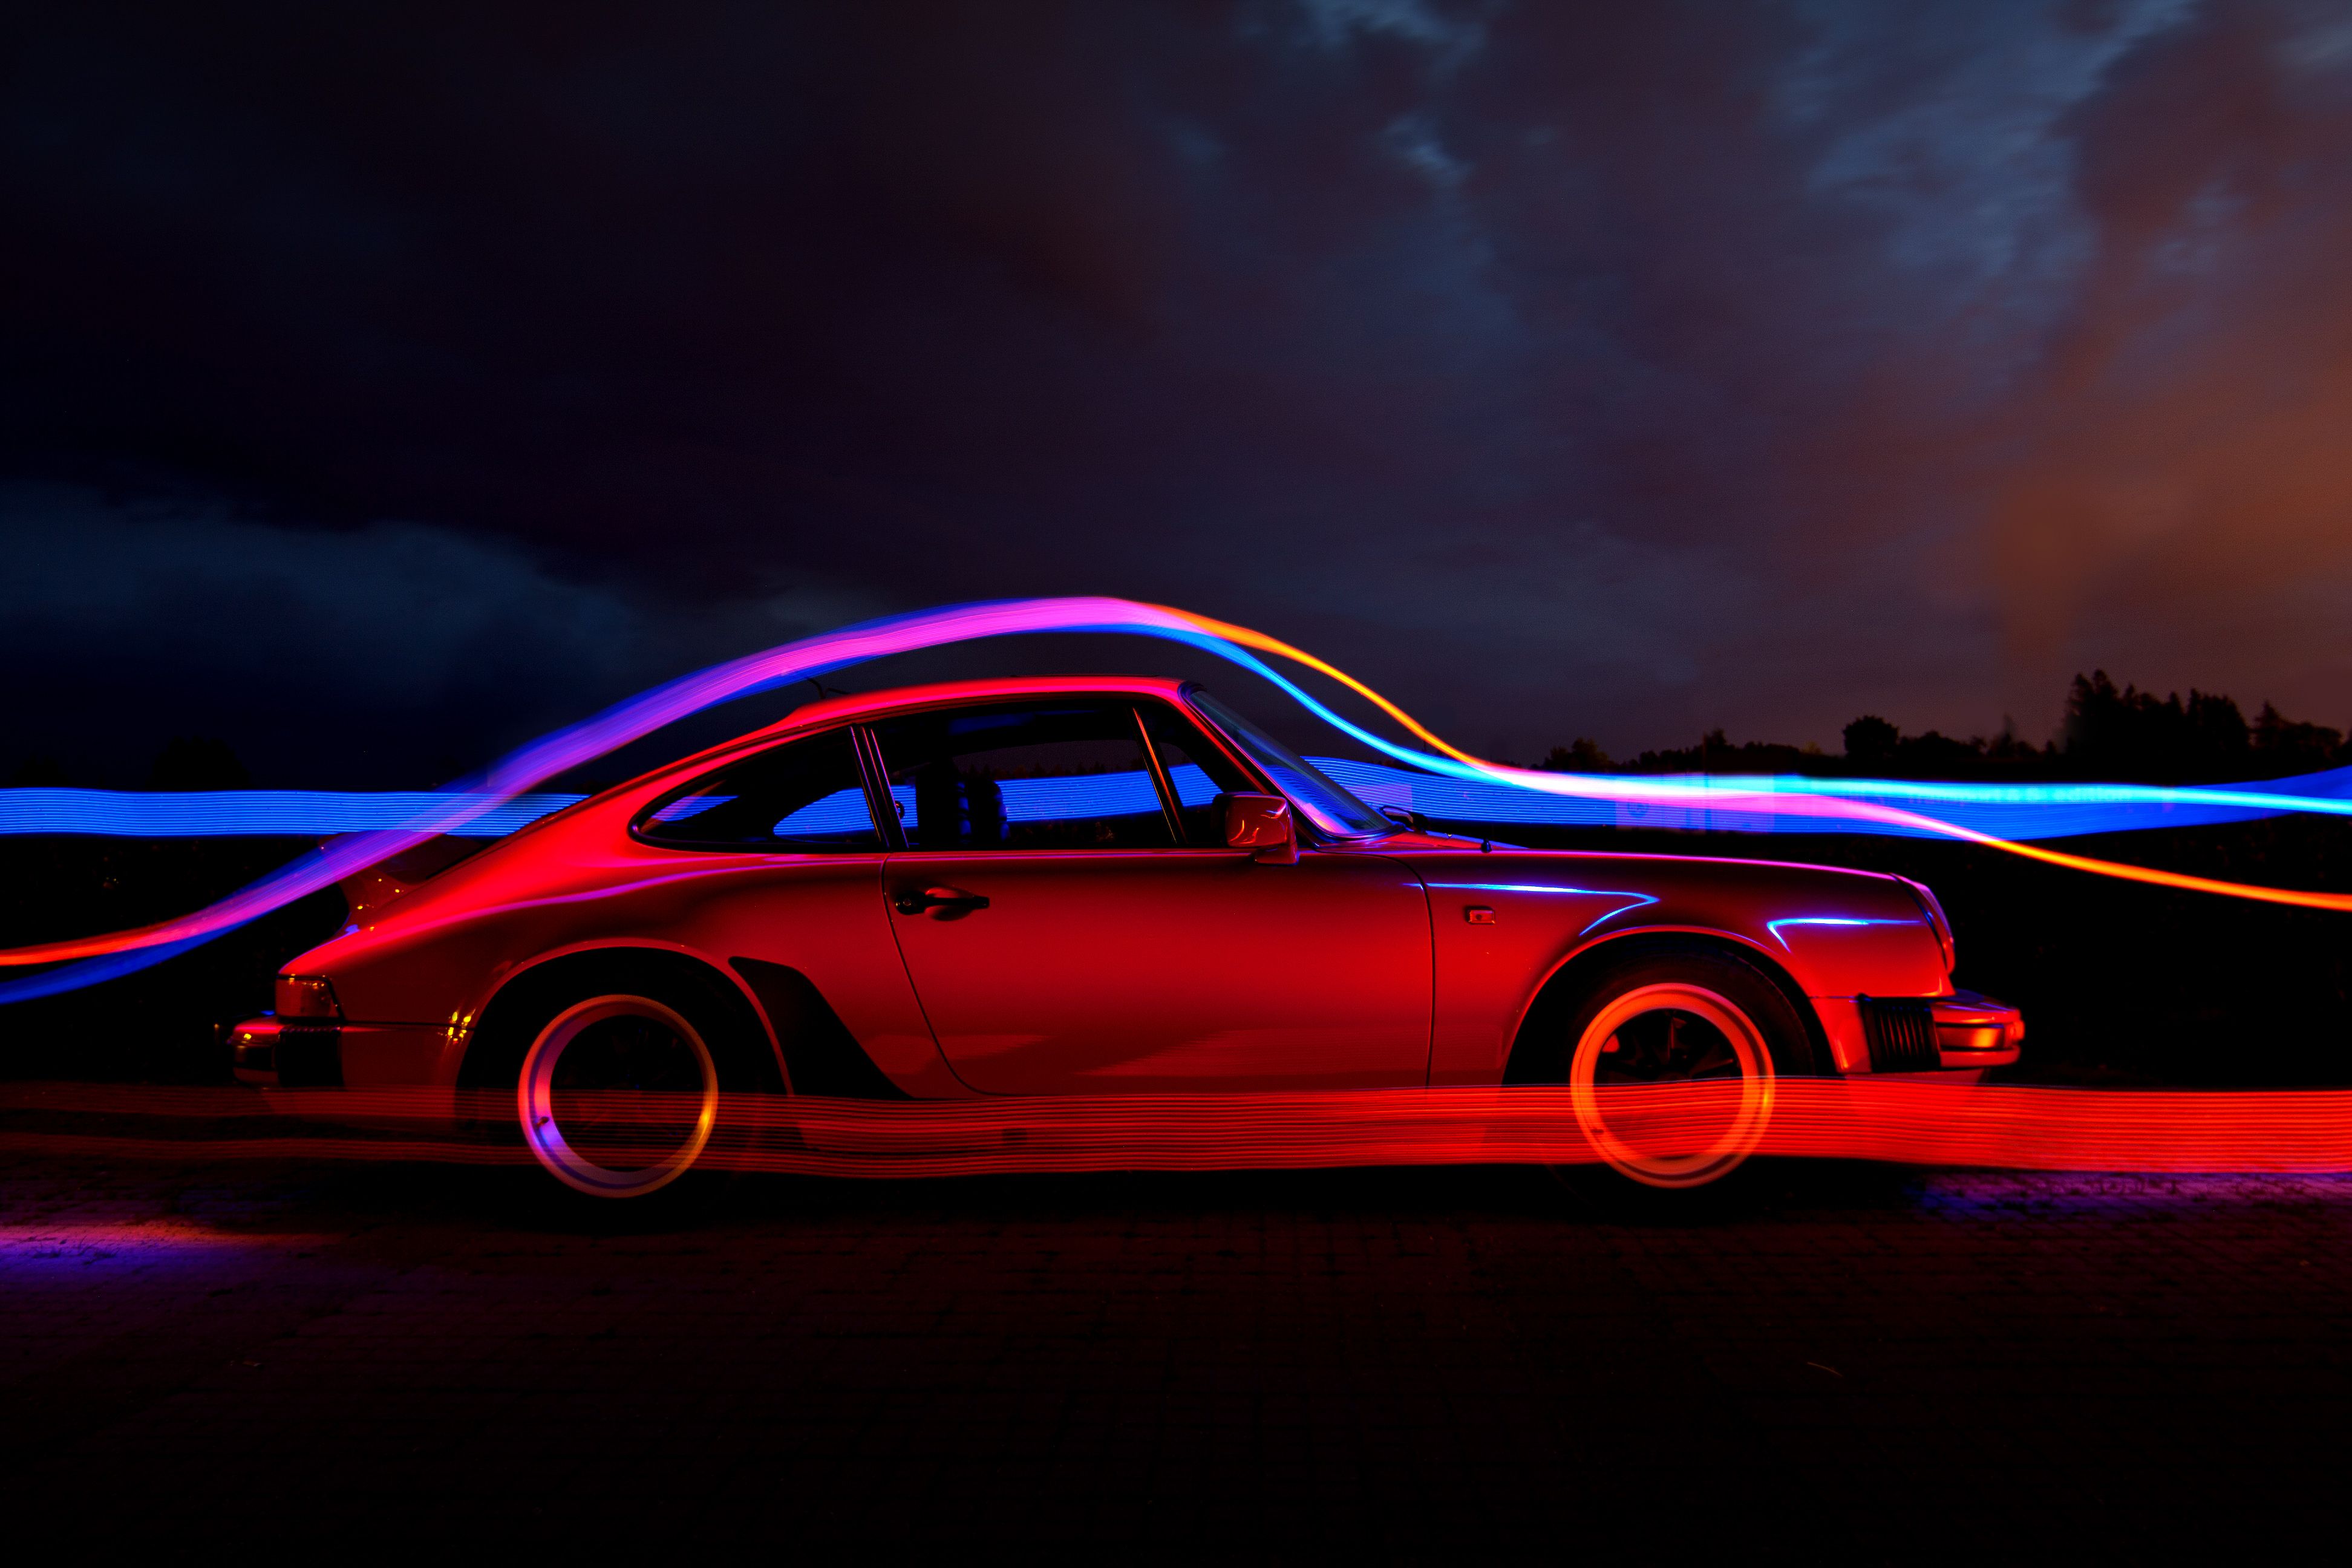 Porsche Hintergrundbild 3888x2592. Wallpaper Red Coupe on Black Background, Background Free Image